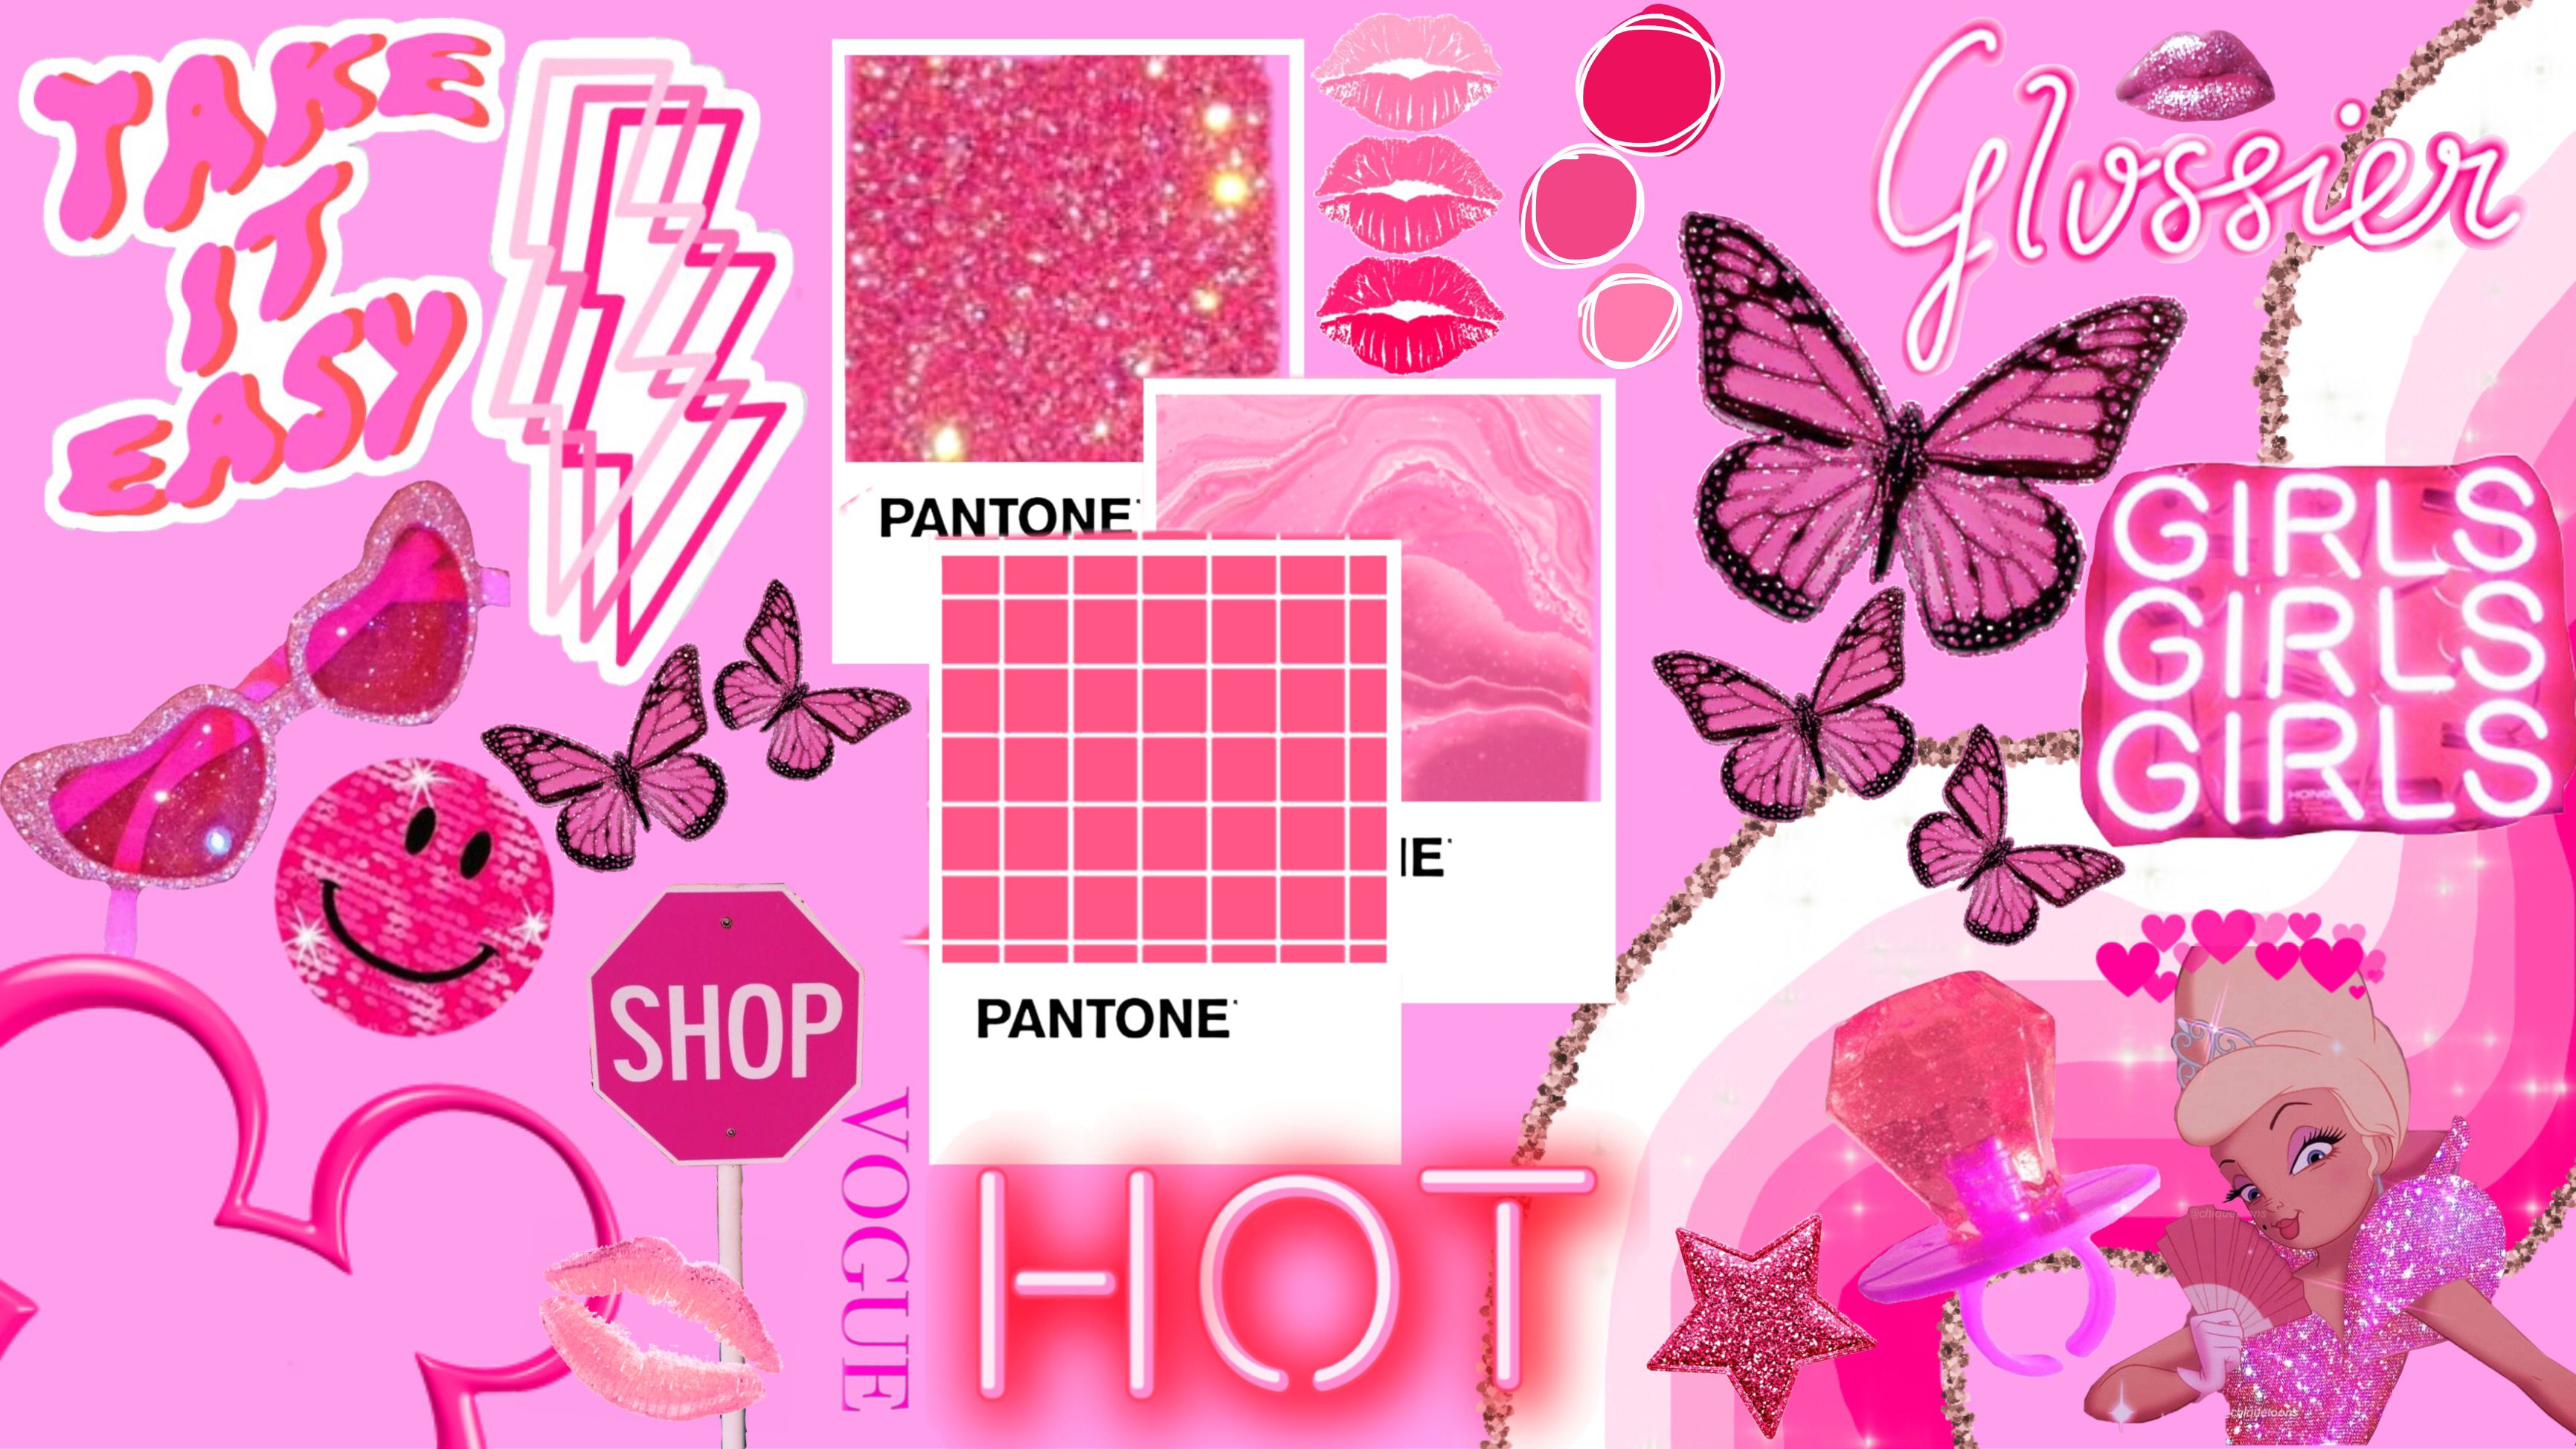 Baddie Pink  Collage  Art Wallpaper Download  MobCup